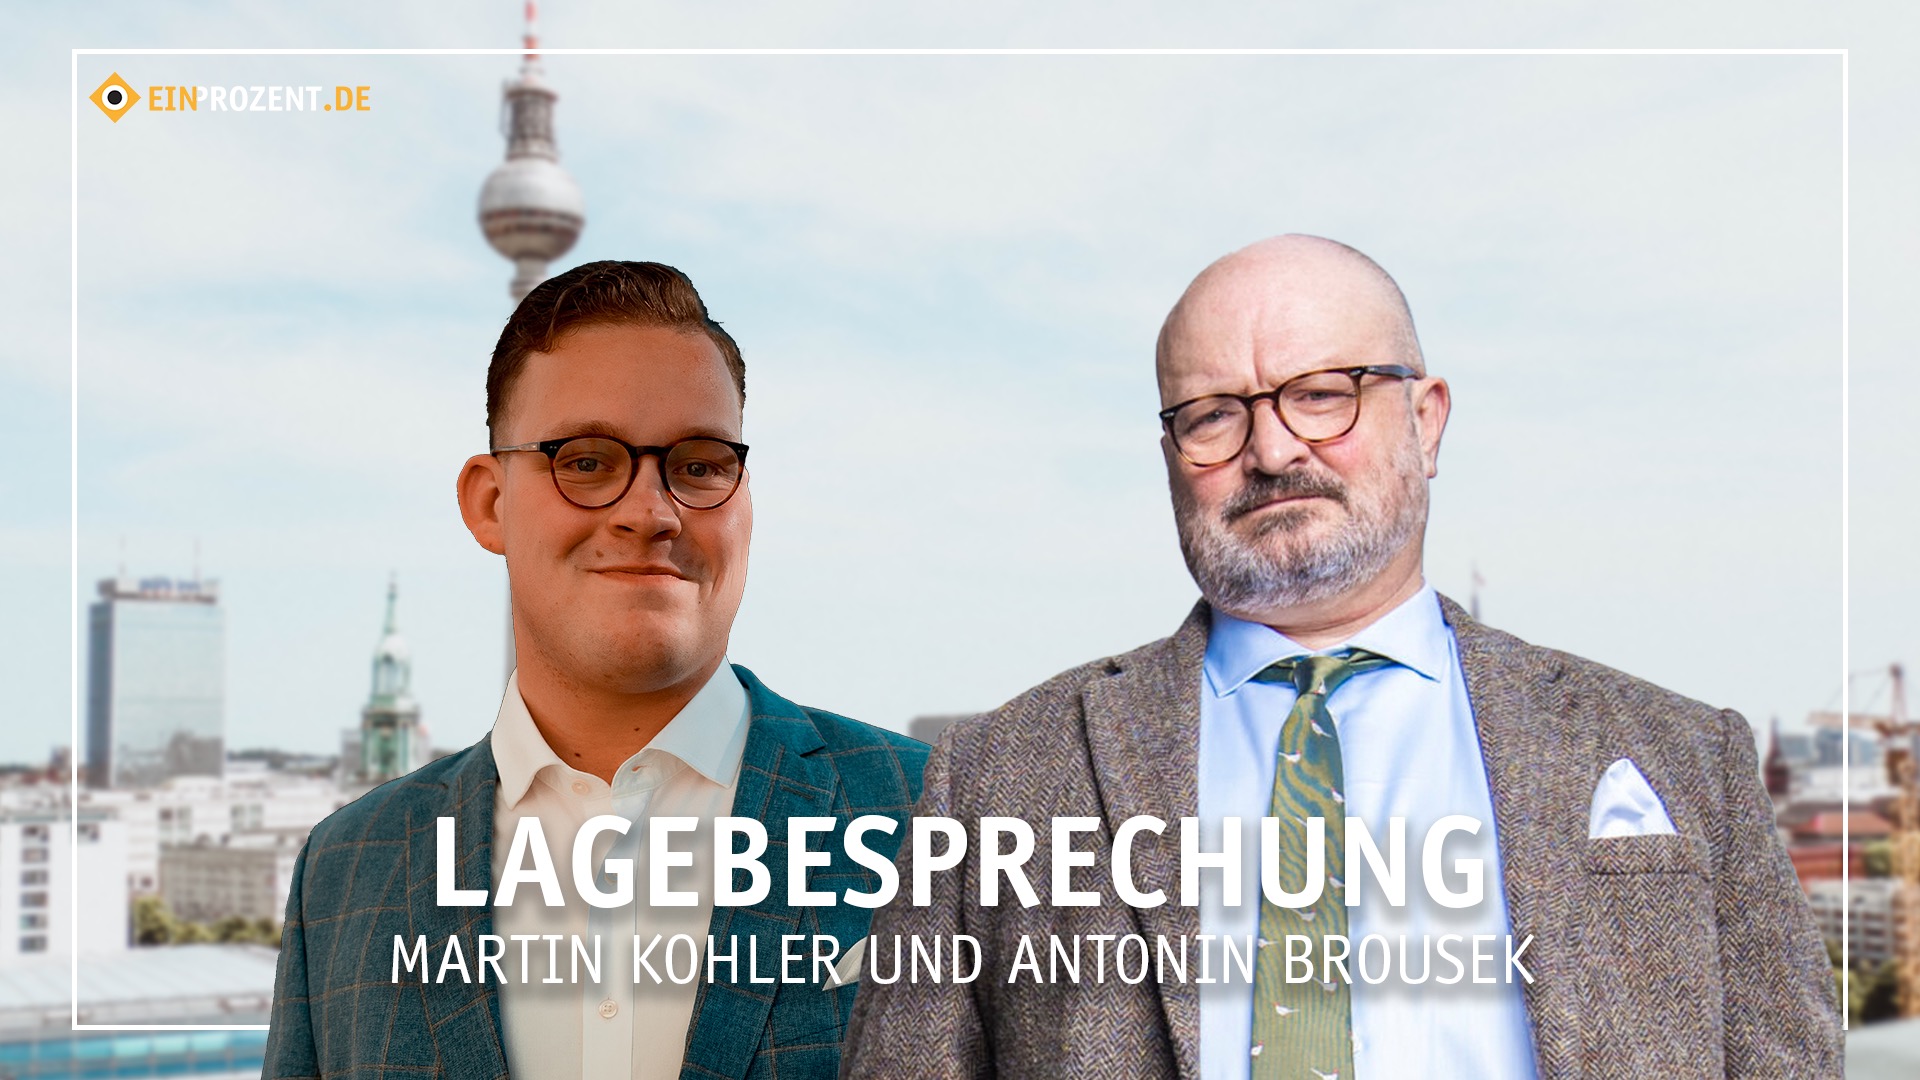 Lagebesprechung: Berlin kurz vor der Wahl